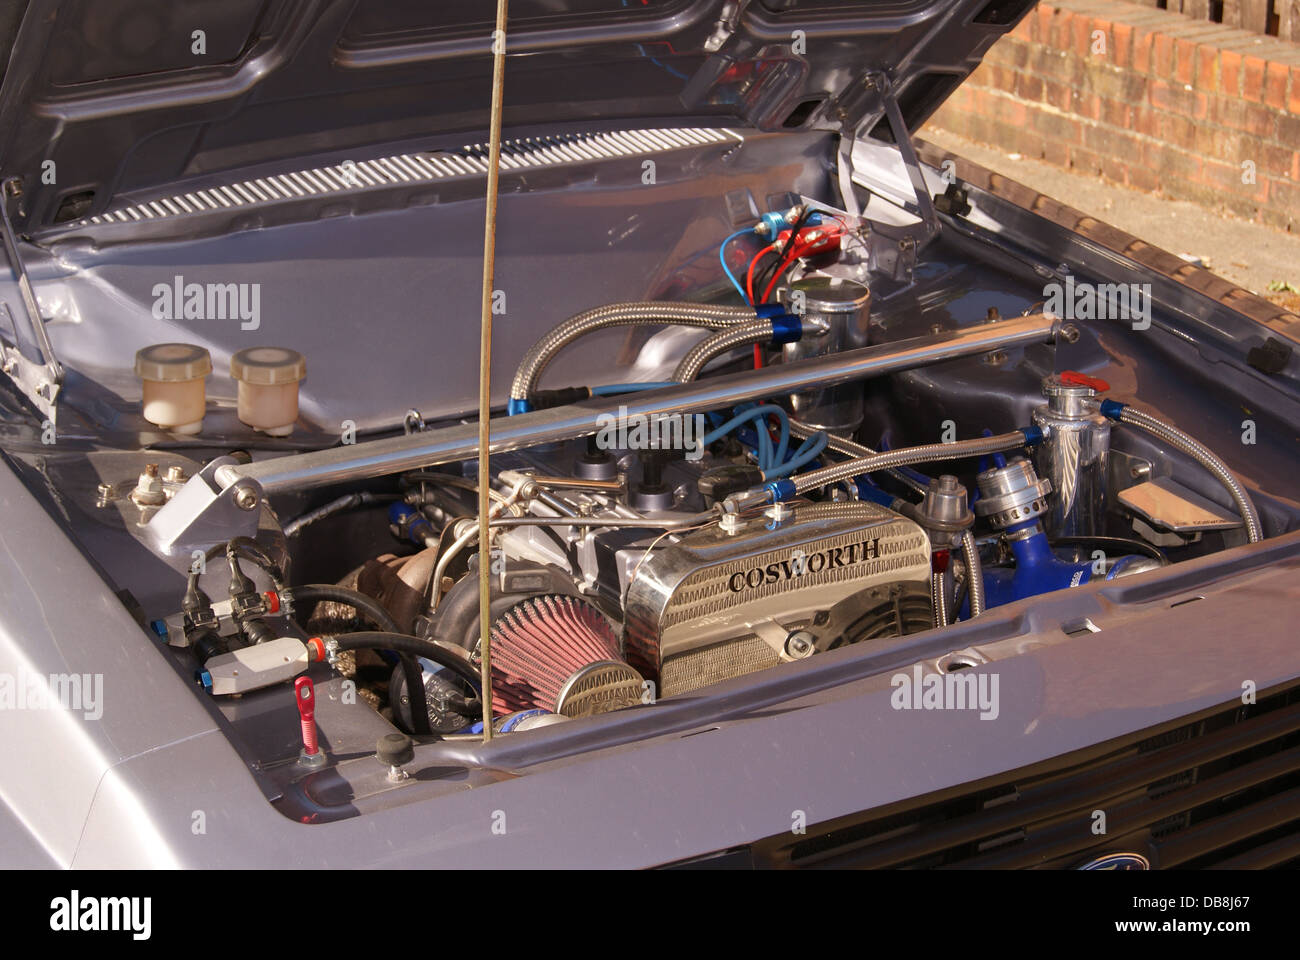 Motore Cosworth Foto Stock